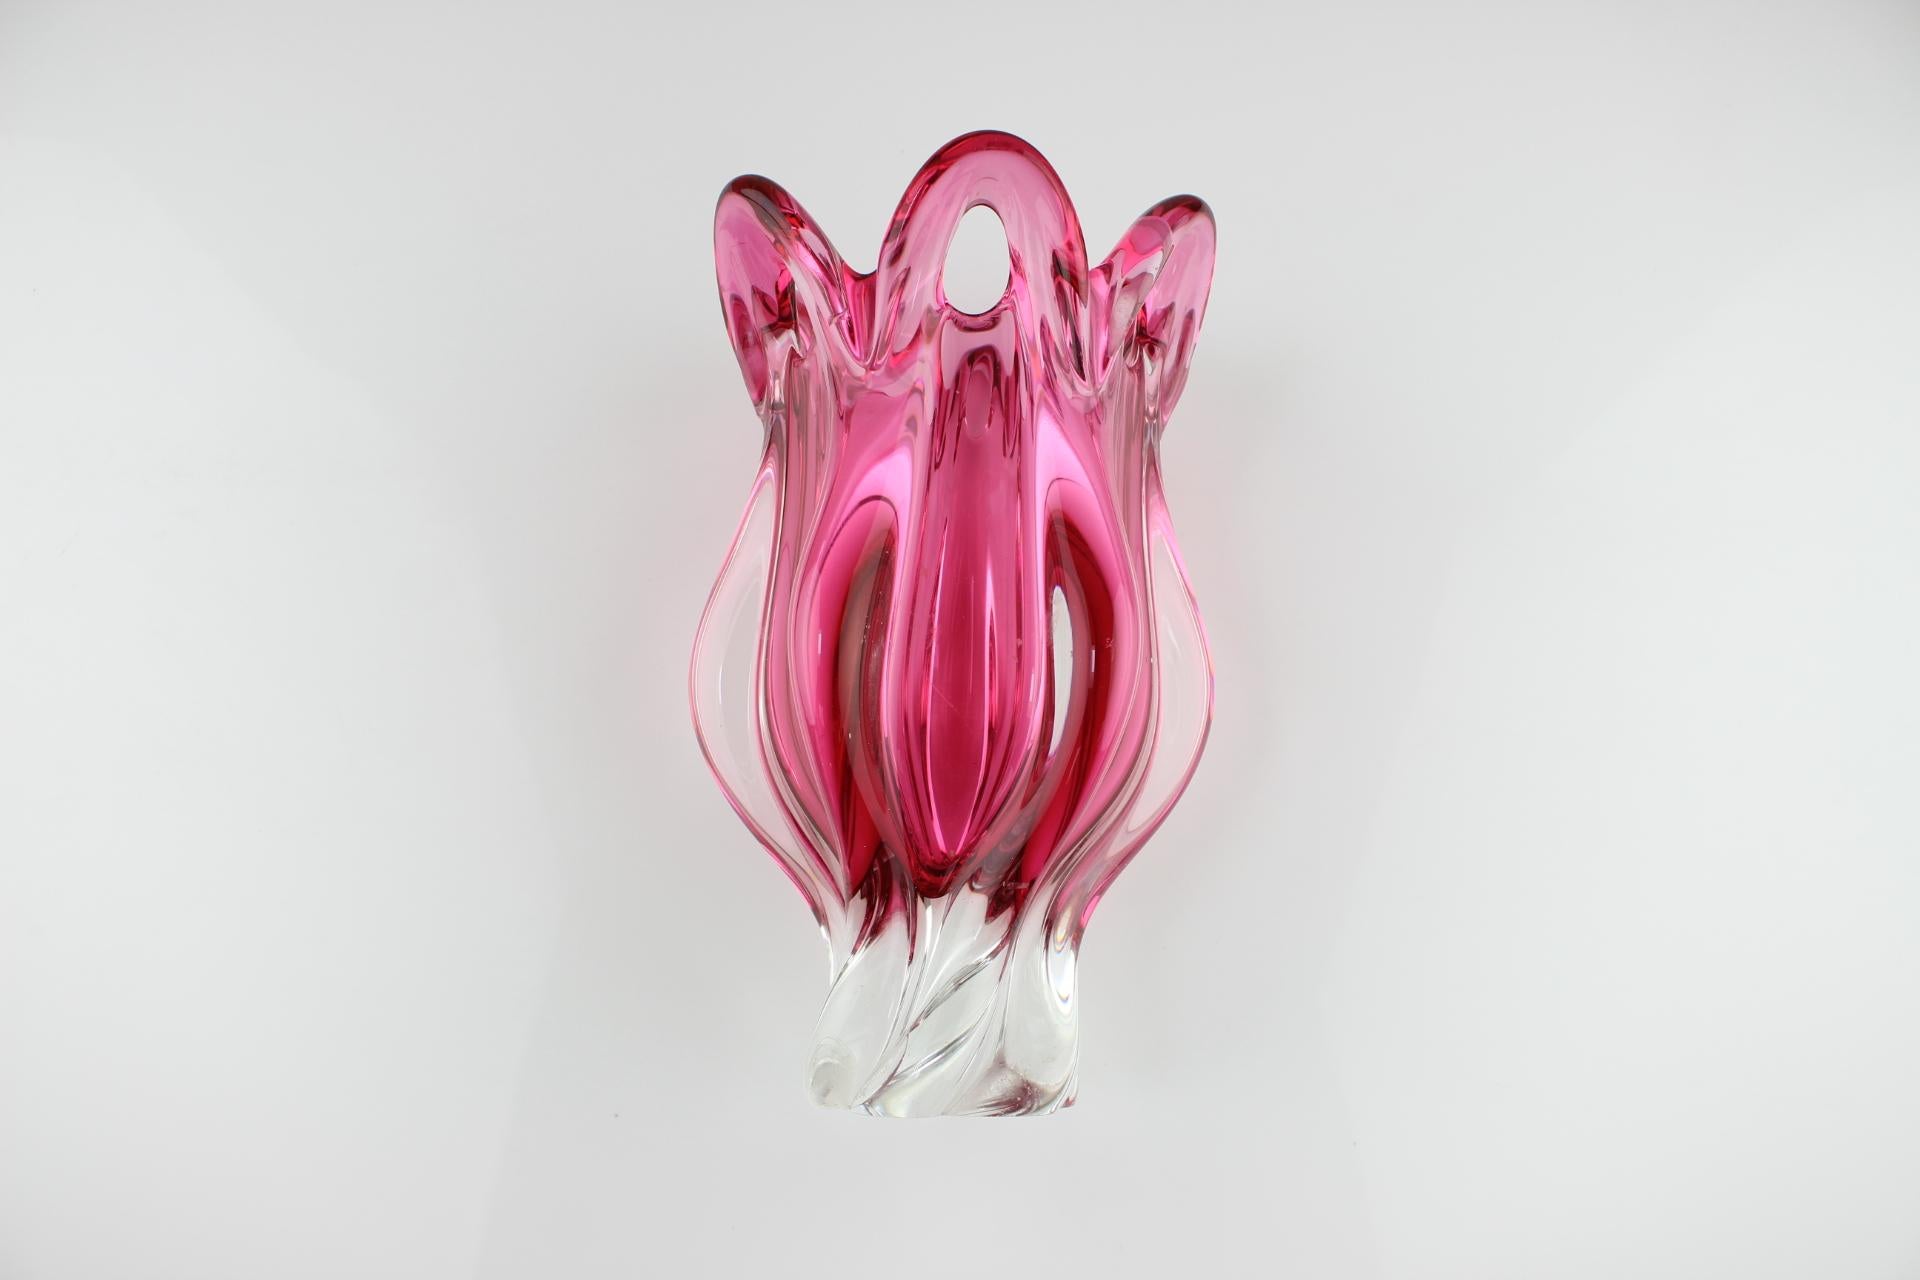 Czech Mid-Century Glass Vase Designed by Josef Hospodka, 1960's